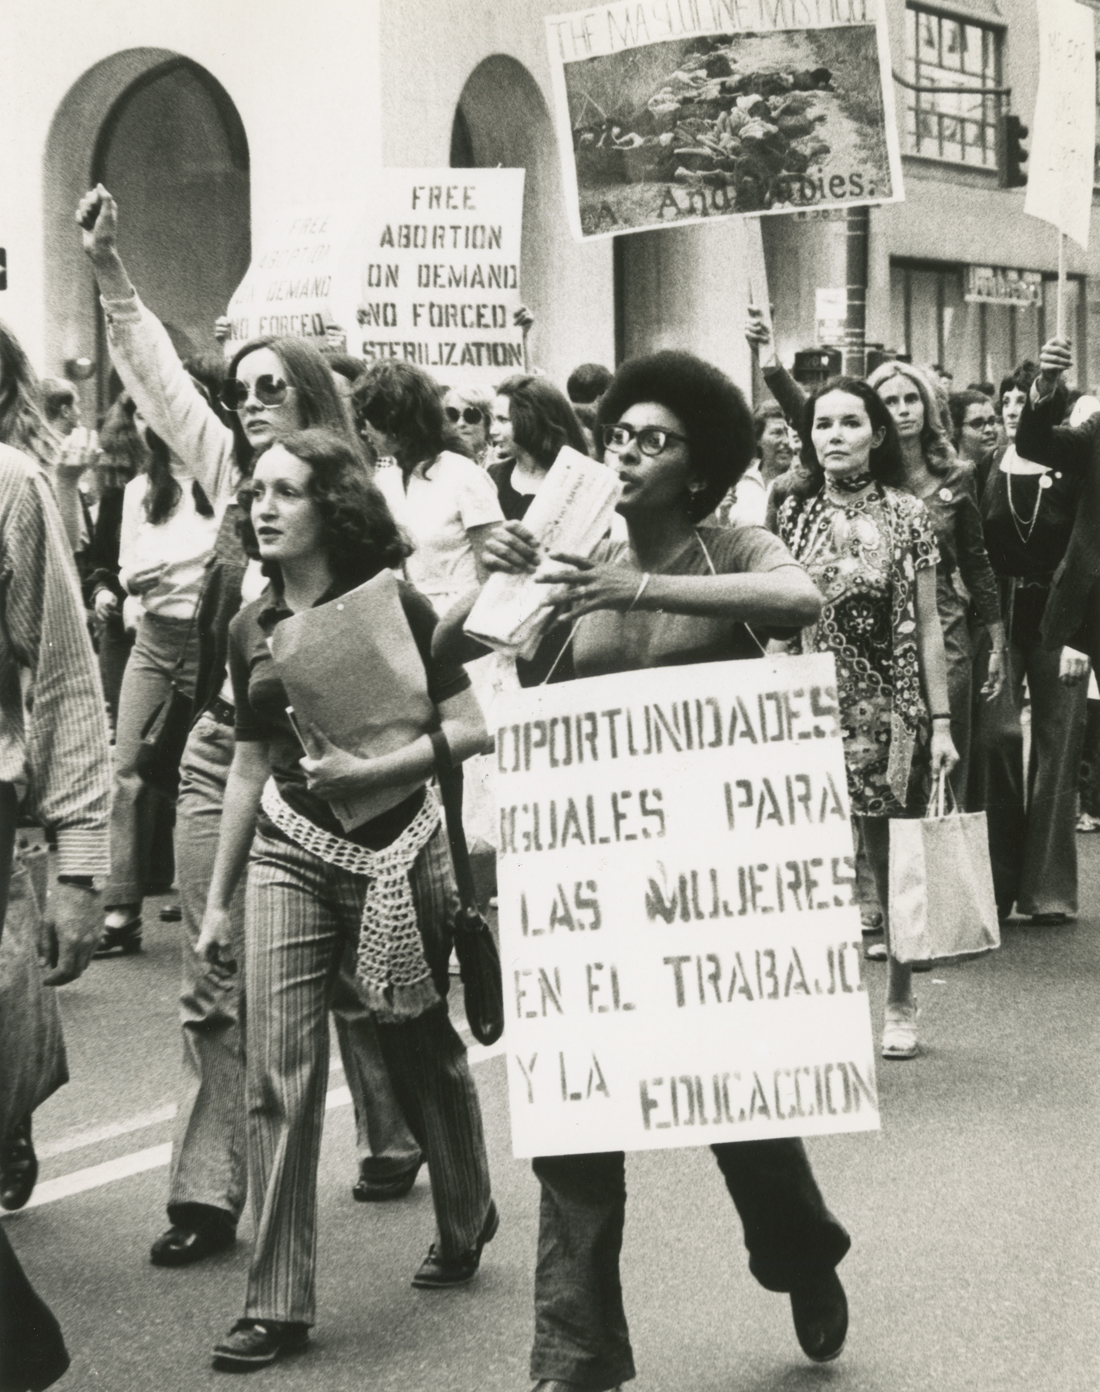 Un groupe de femmes marchent dans un rassemblement, beaucoup tiennent des pancartes de protestation